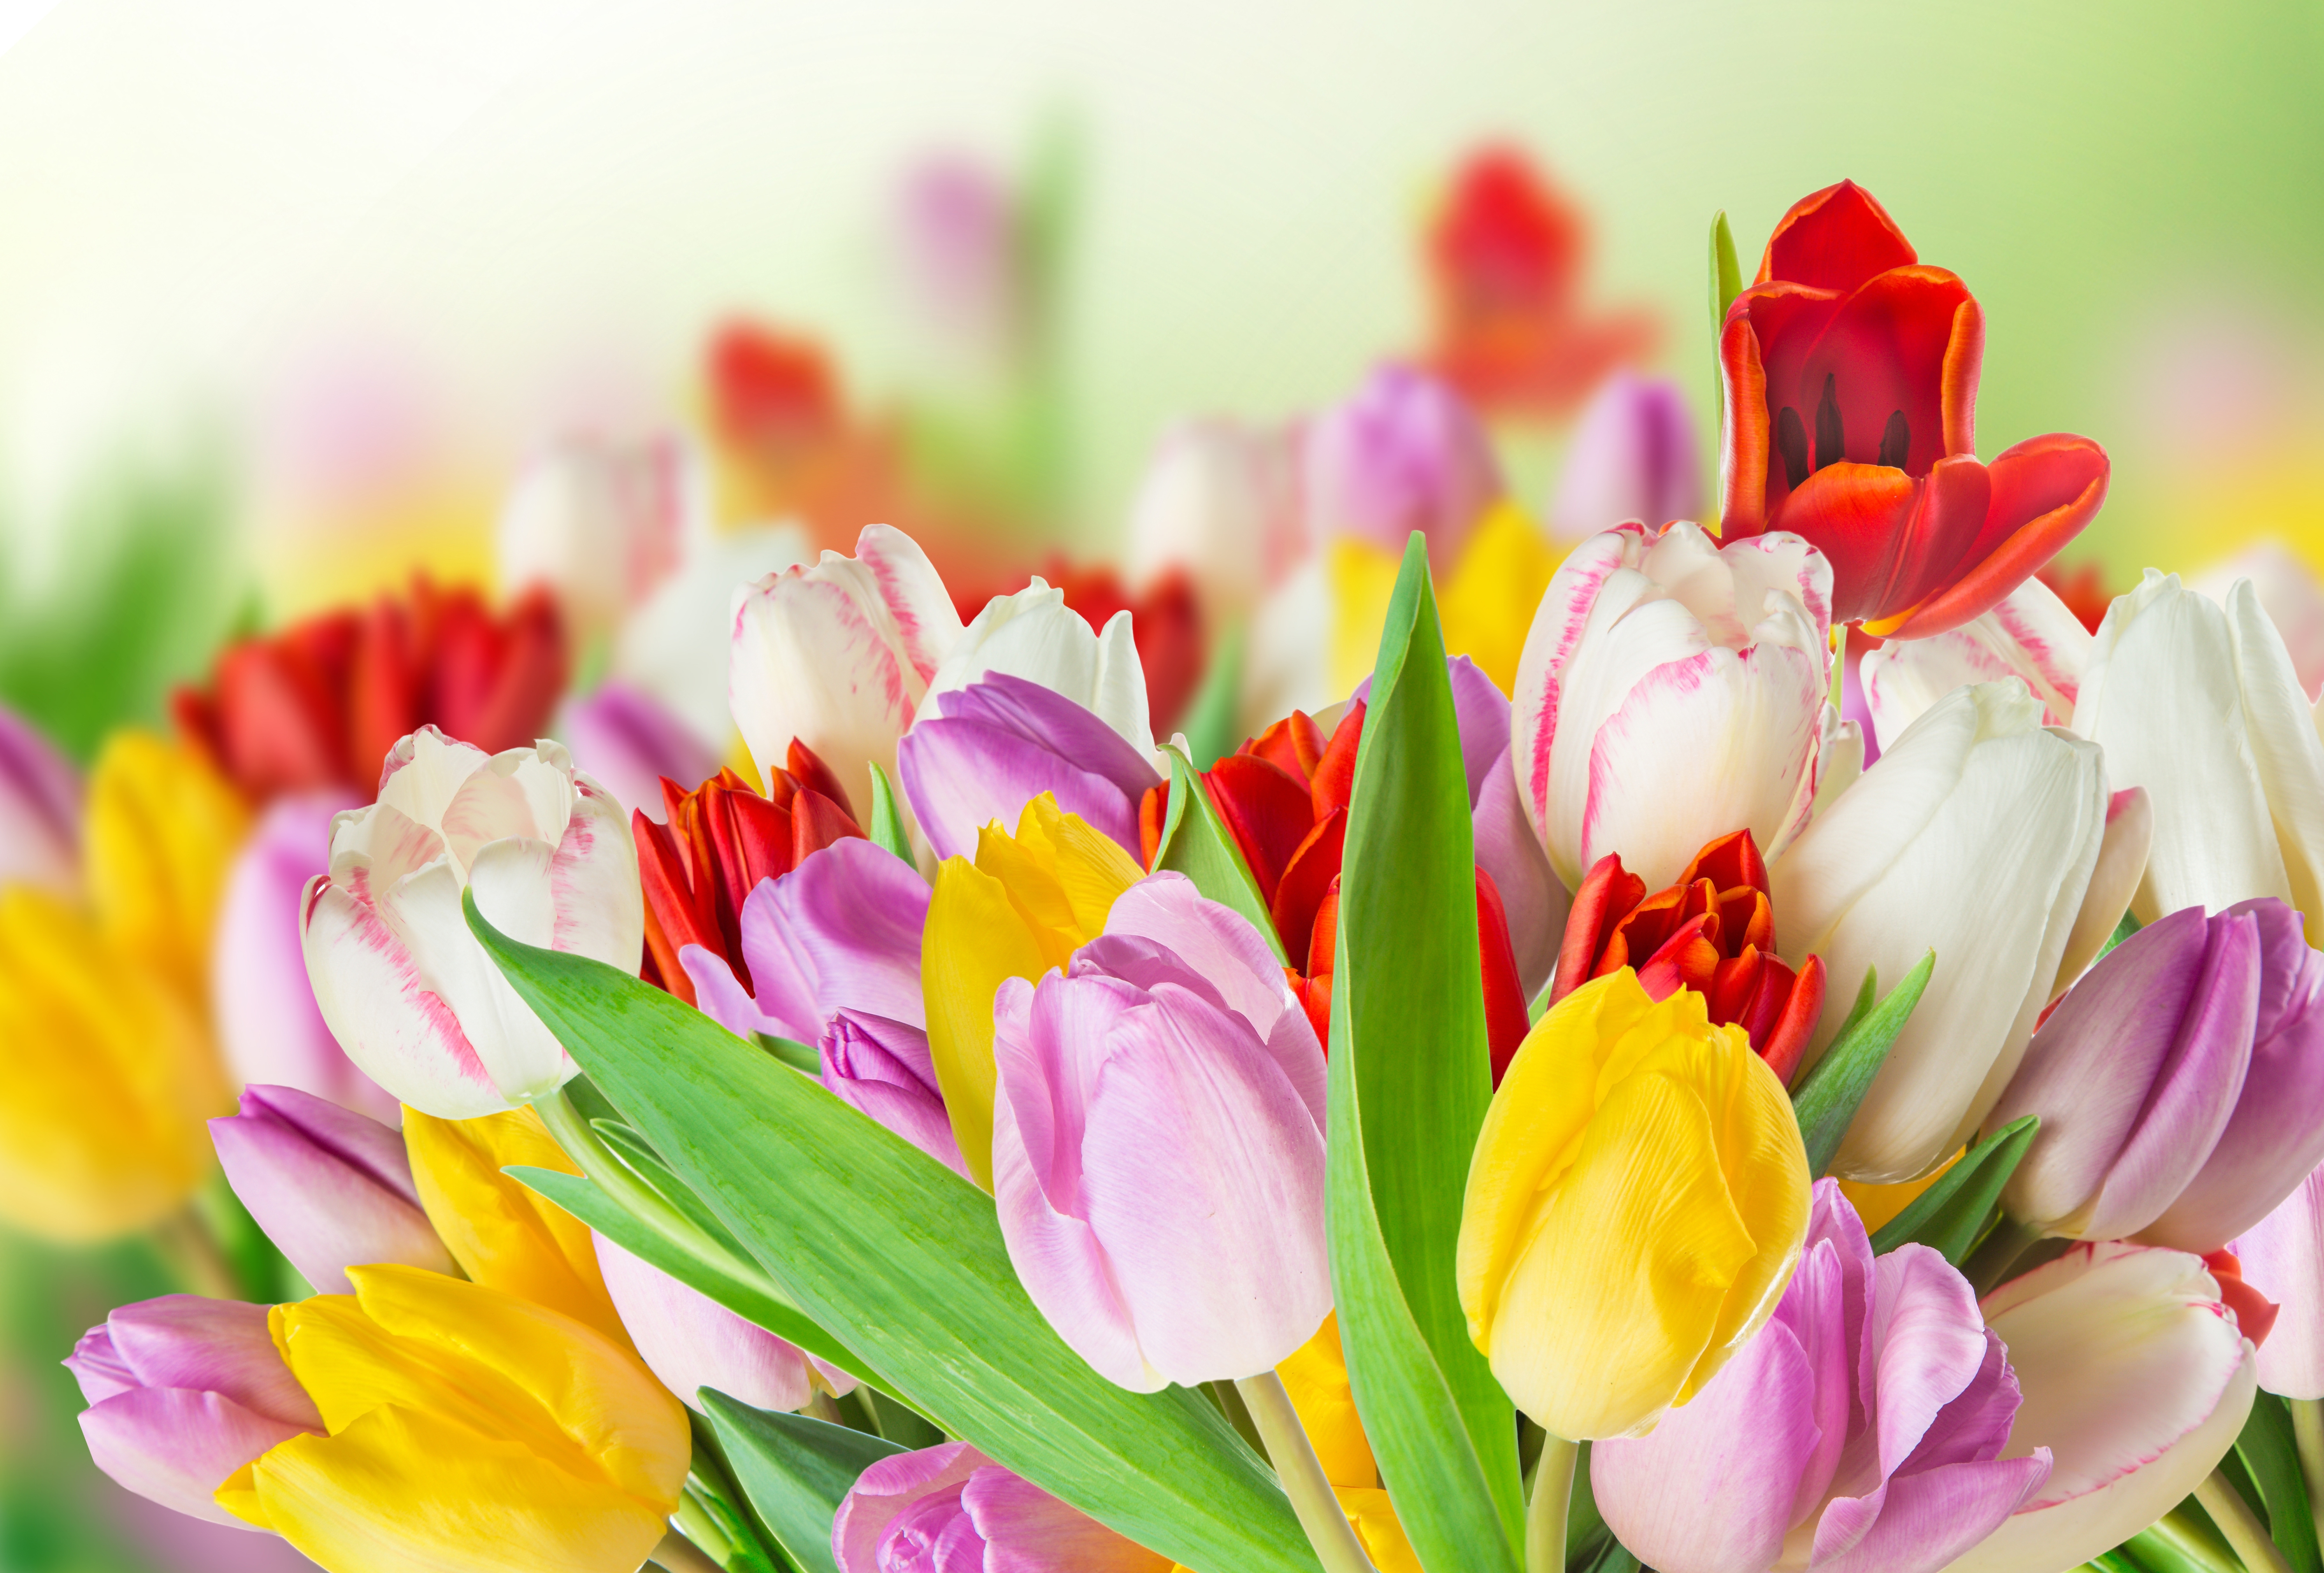 Handy-Wallpaper Natur, Blumen, Blume, Bunt, Frühling, Tulpe, Gelbe Blume, Weiße Blume, Lila Blume, Rote Blume, Erde/natur kostenlos herunterladen.